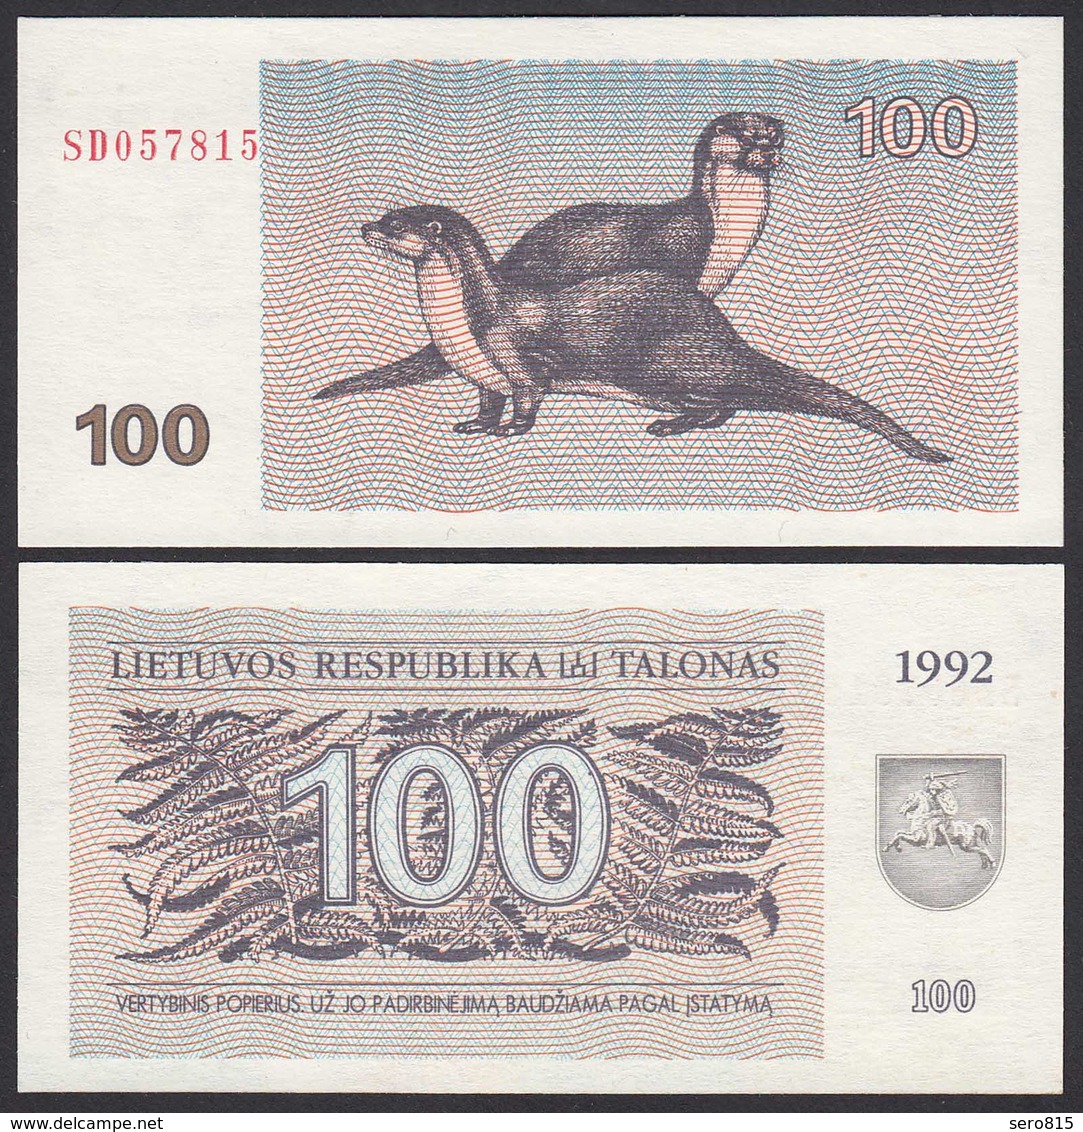 Litauen - Lithunia 100 Talonas Banknote UNC 1992 Pick 42    (25466 - Lituania